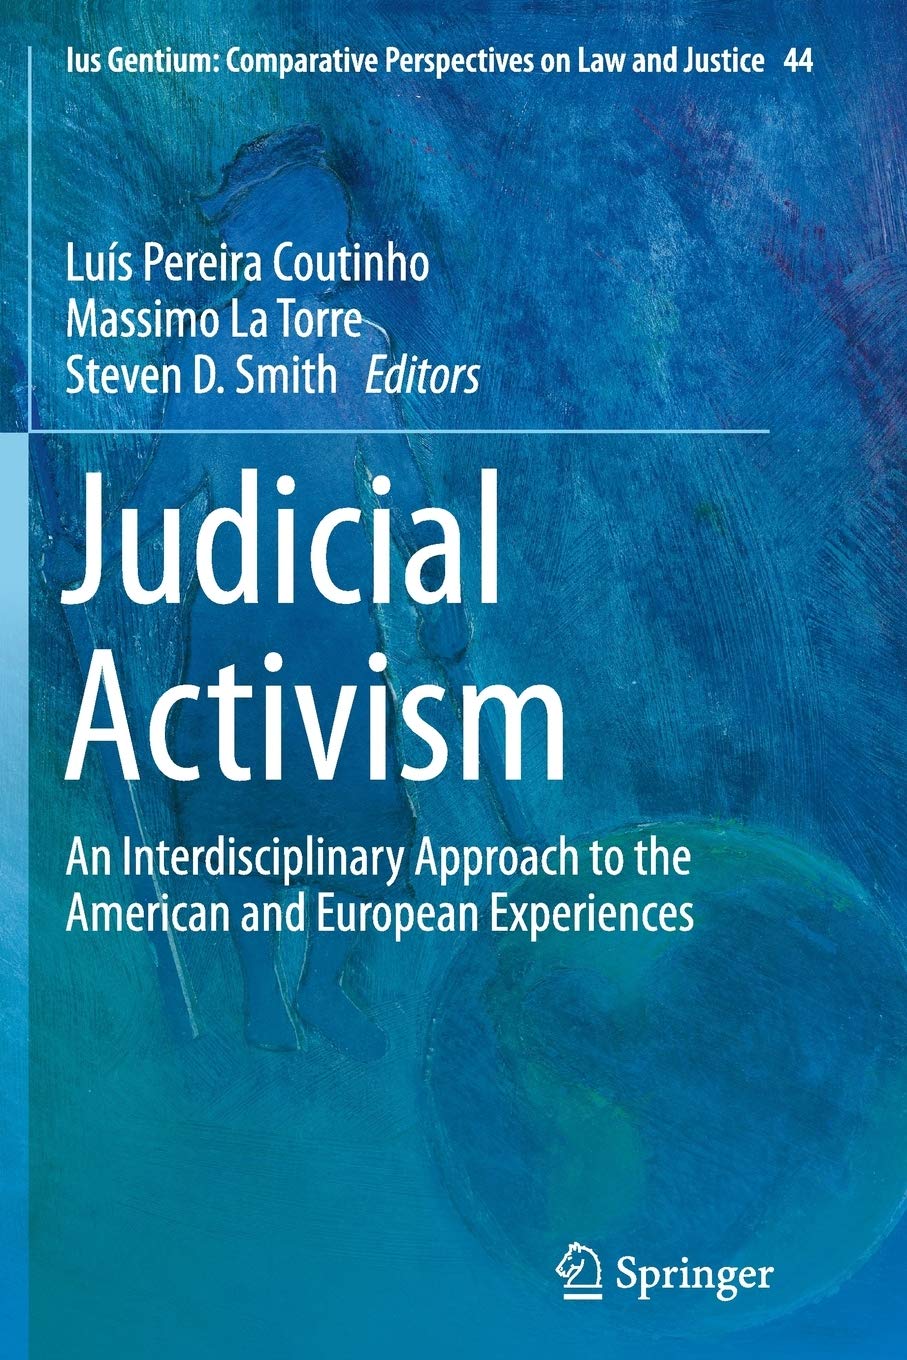 Imagen de portada del libro Judicial Activism